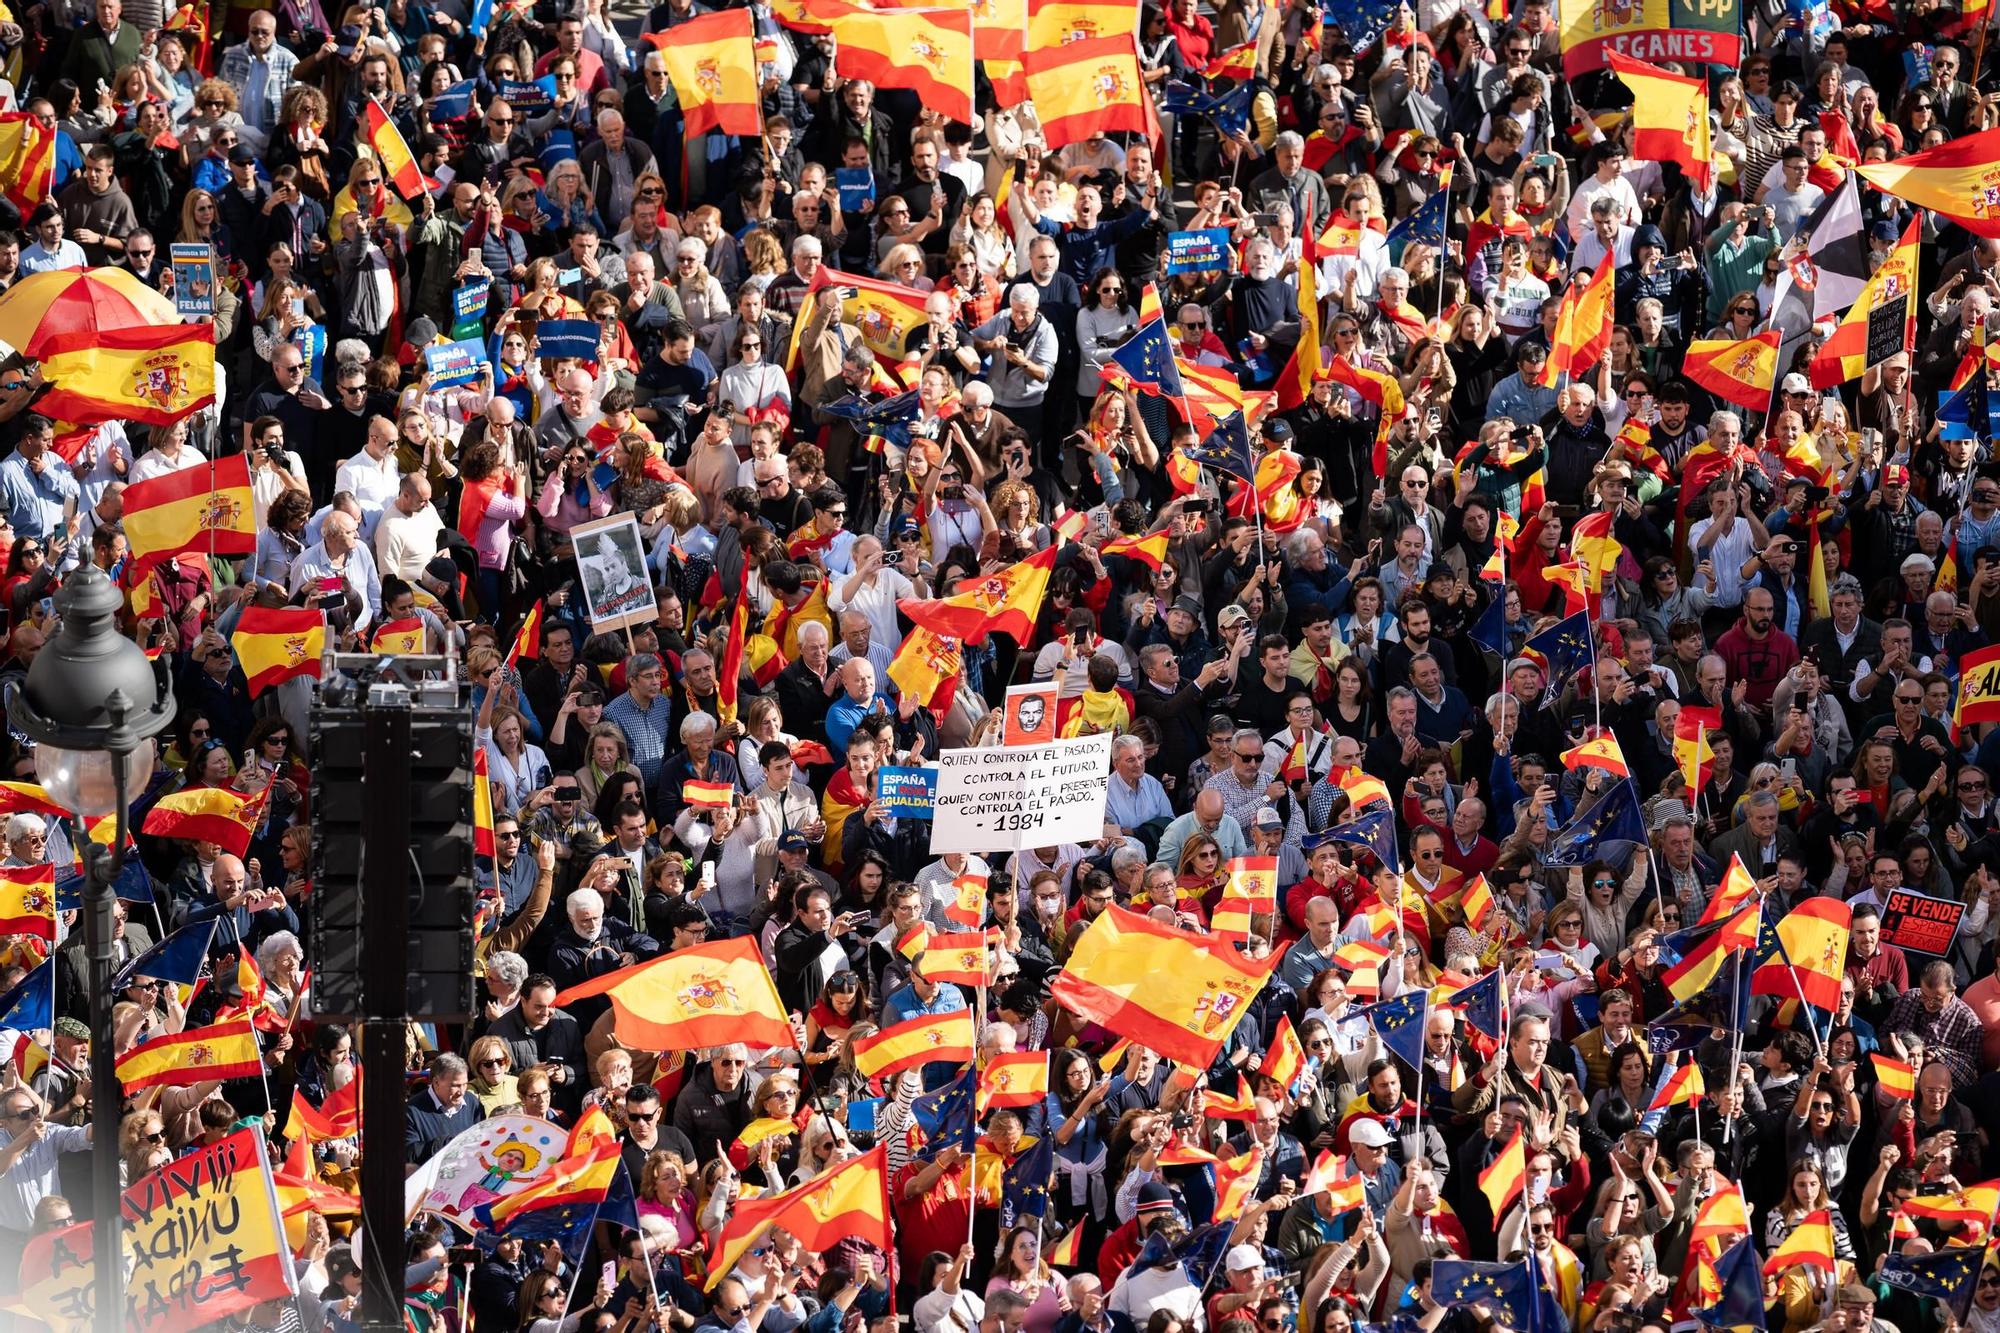 Manifestació contra l'amnistia a Madrid, en fotos